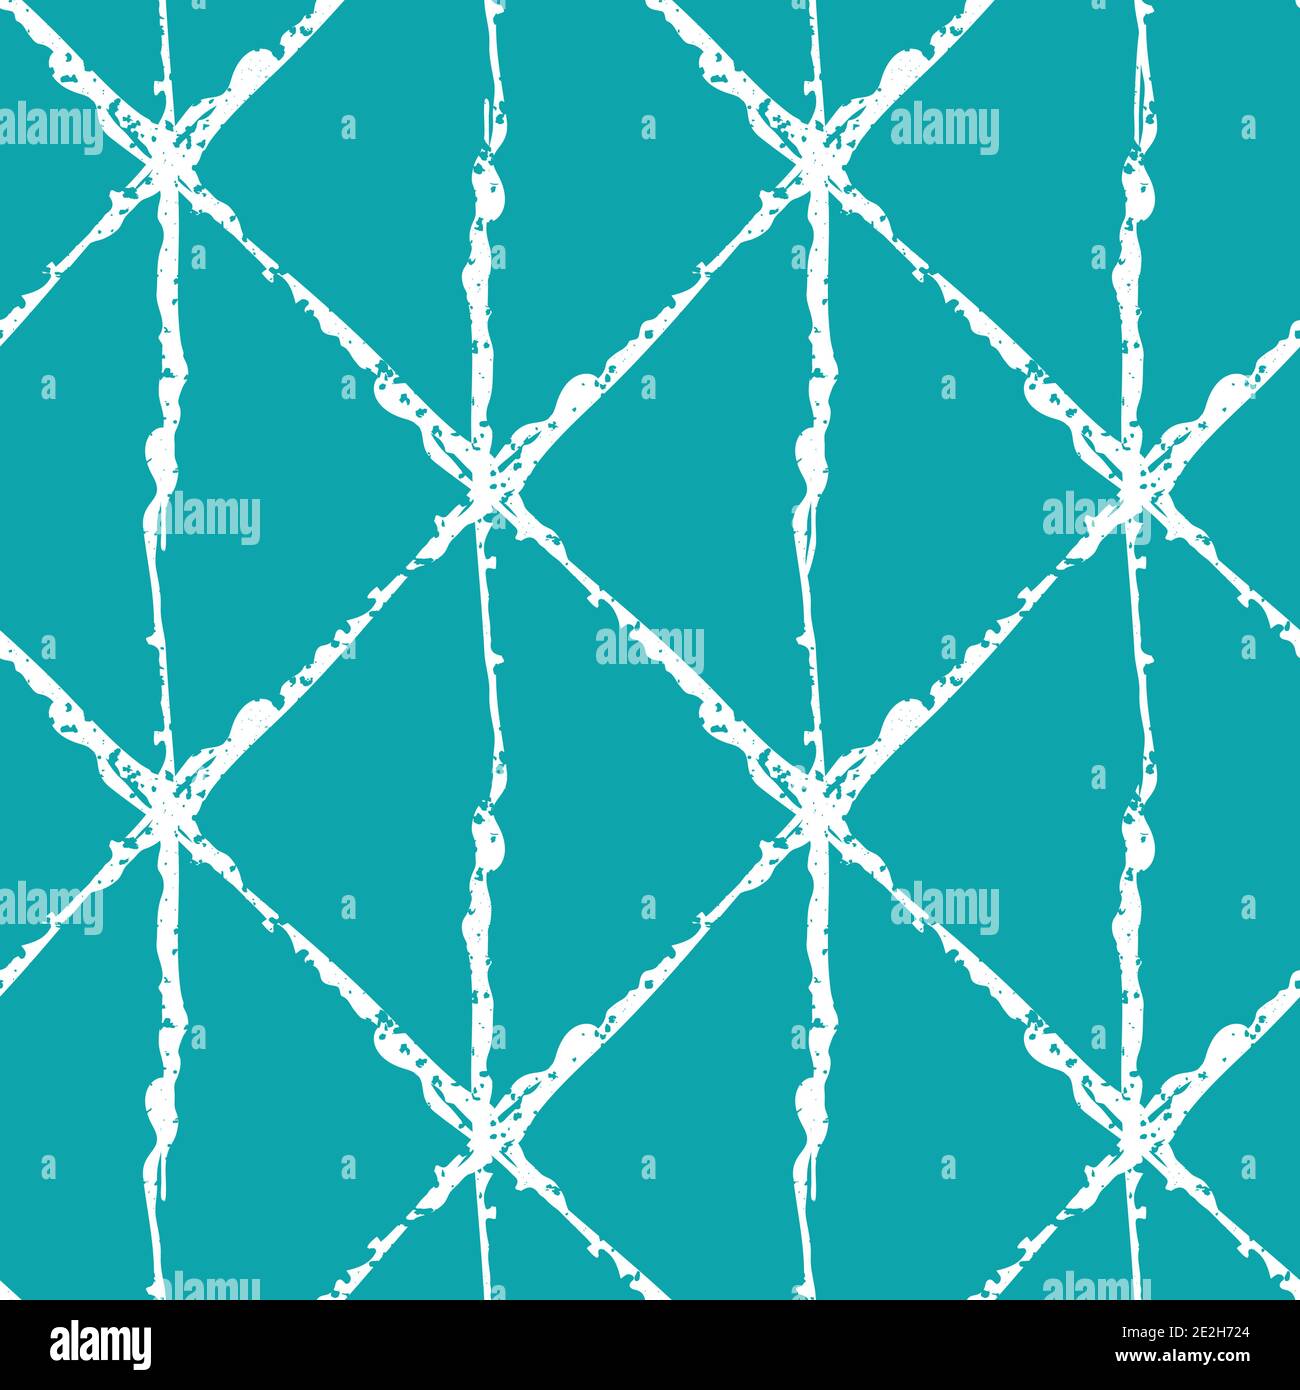 Isometrische Grunge Pinsel Linie Gitter Vektor nahtlose Muster Hintergrund. Minimaler blau-weißer Hintergrund wiederholen. Lineare geometrische vertikale Konstruktion. Modern Stock Vektor